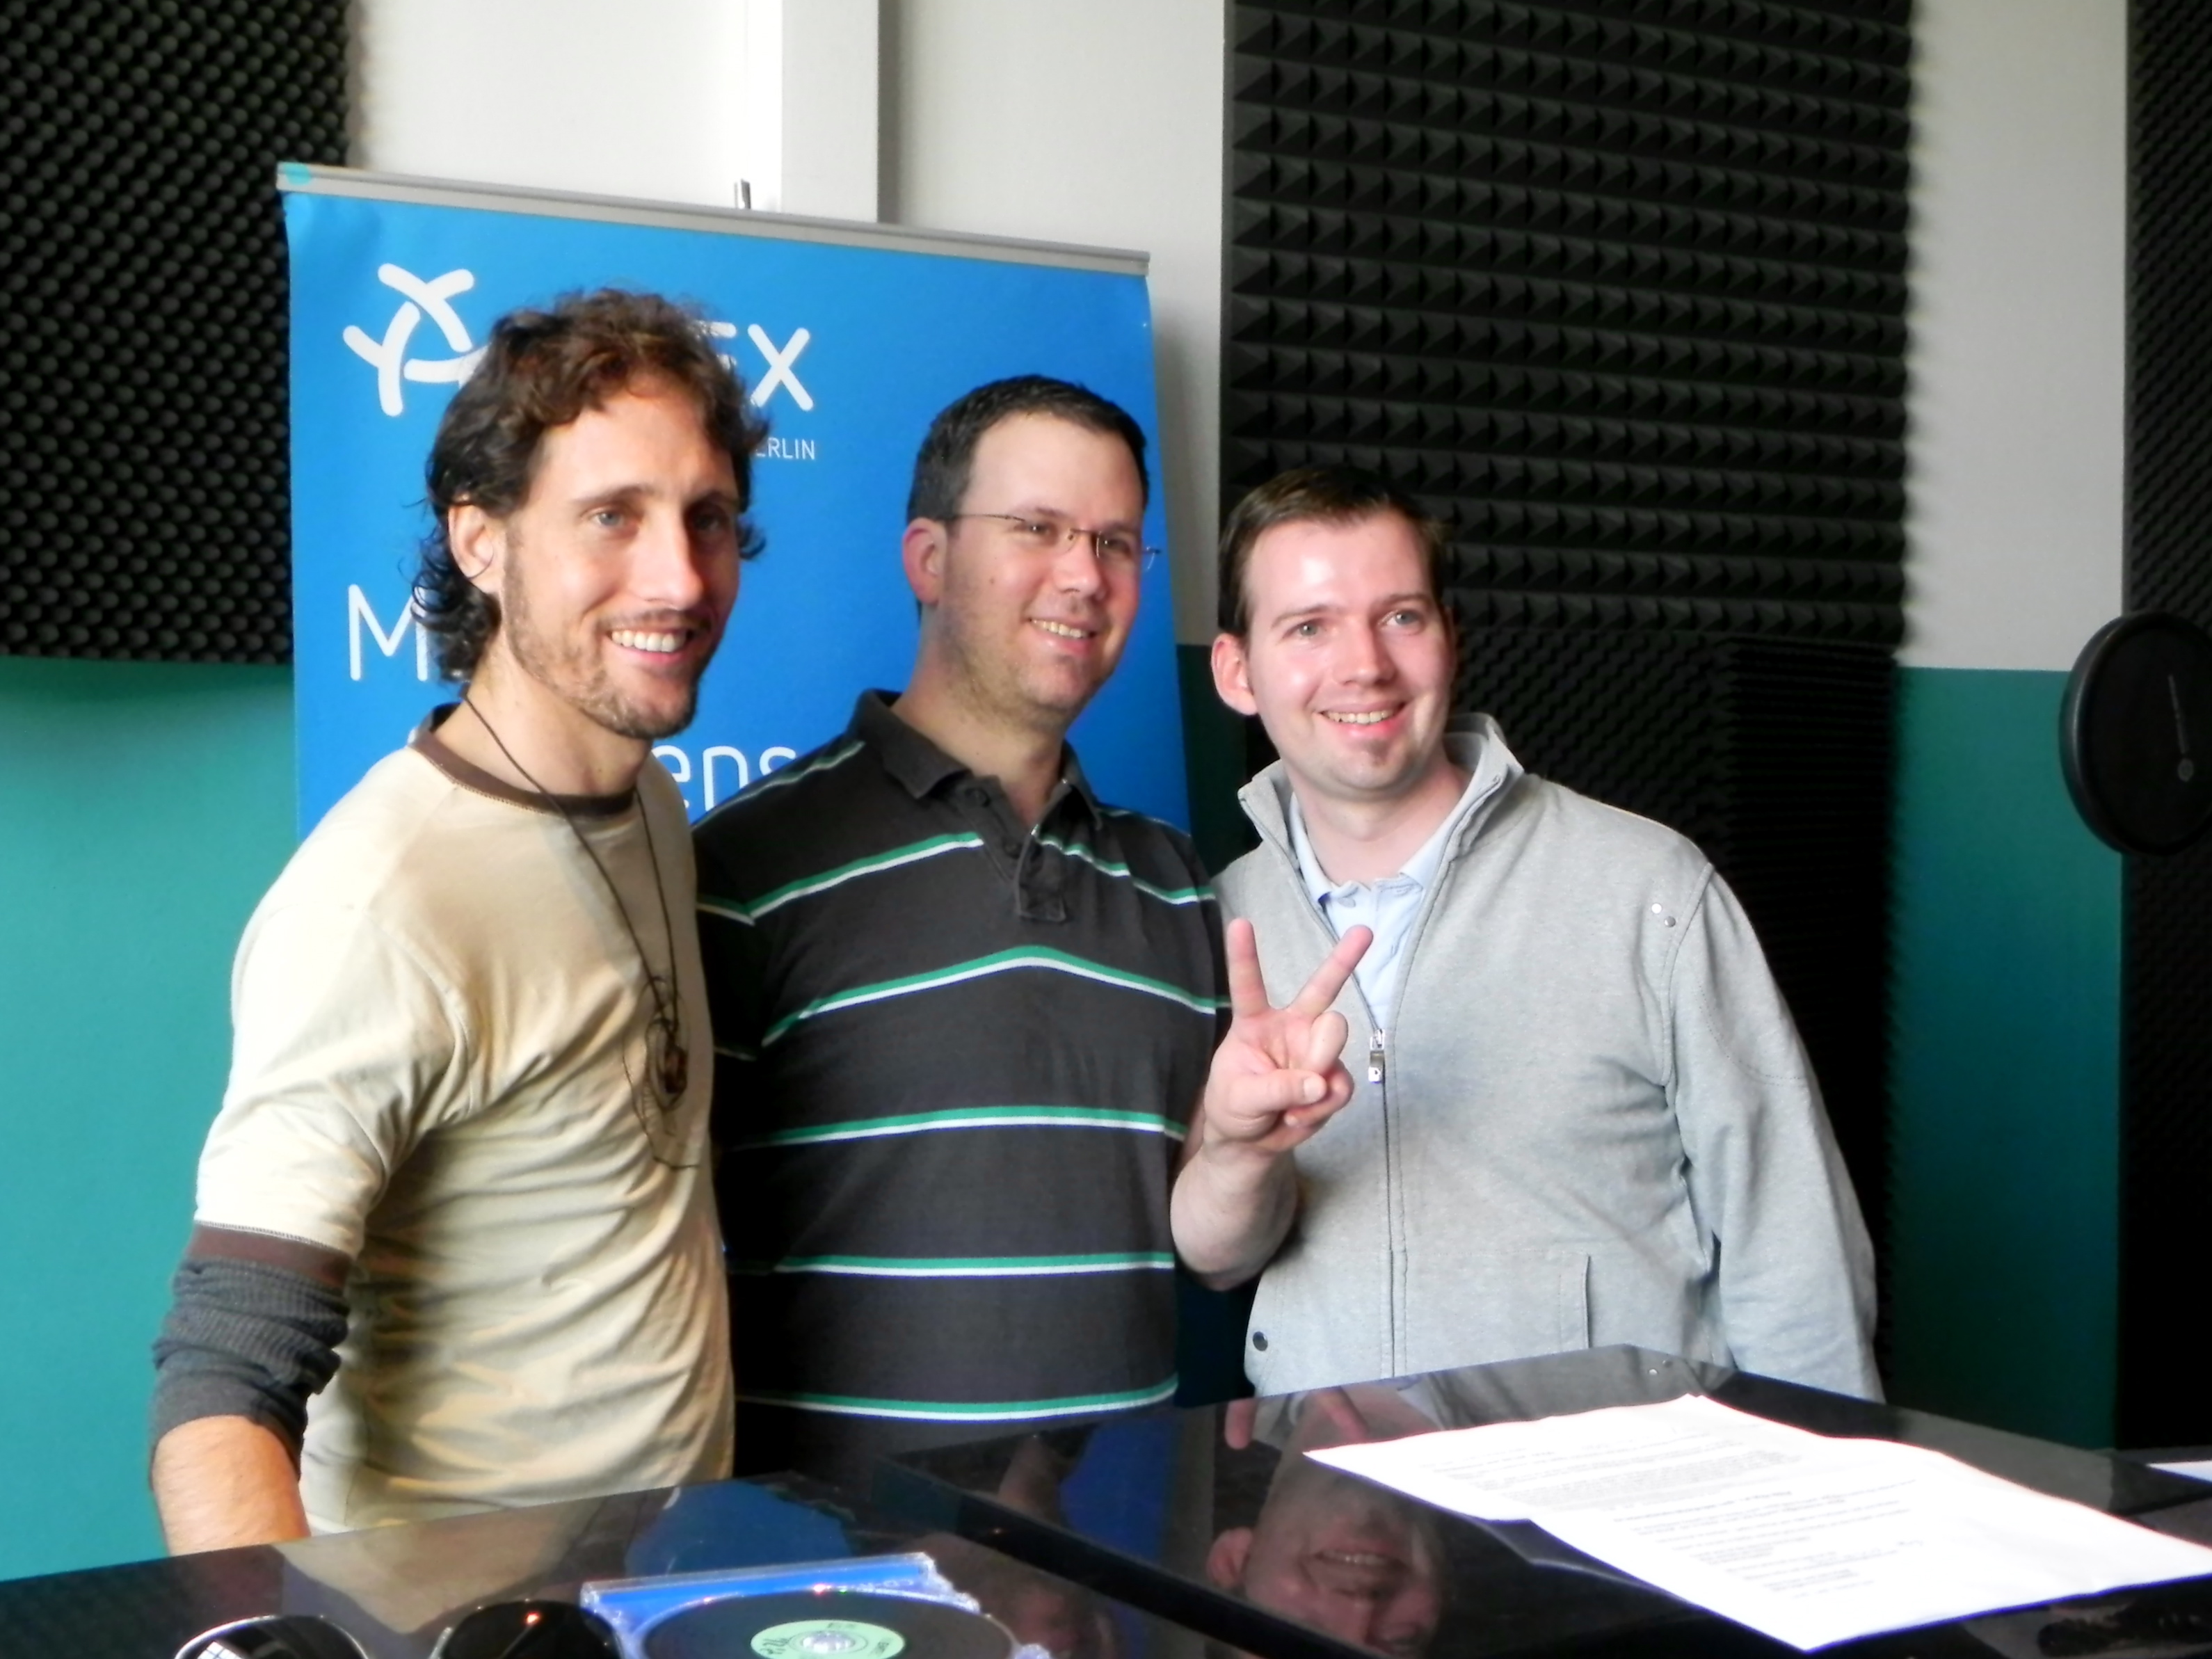 Daniel Tyler Pohnke of Full Moon Rising with Aviv Russ and Manuel from Kol Berlin